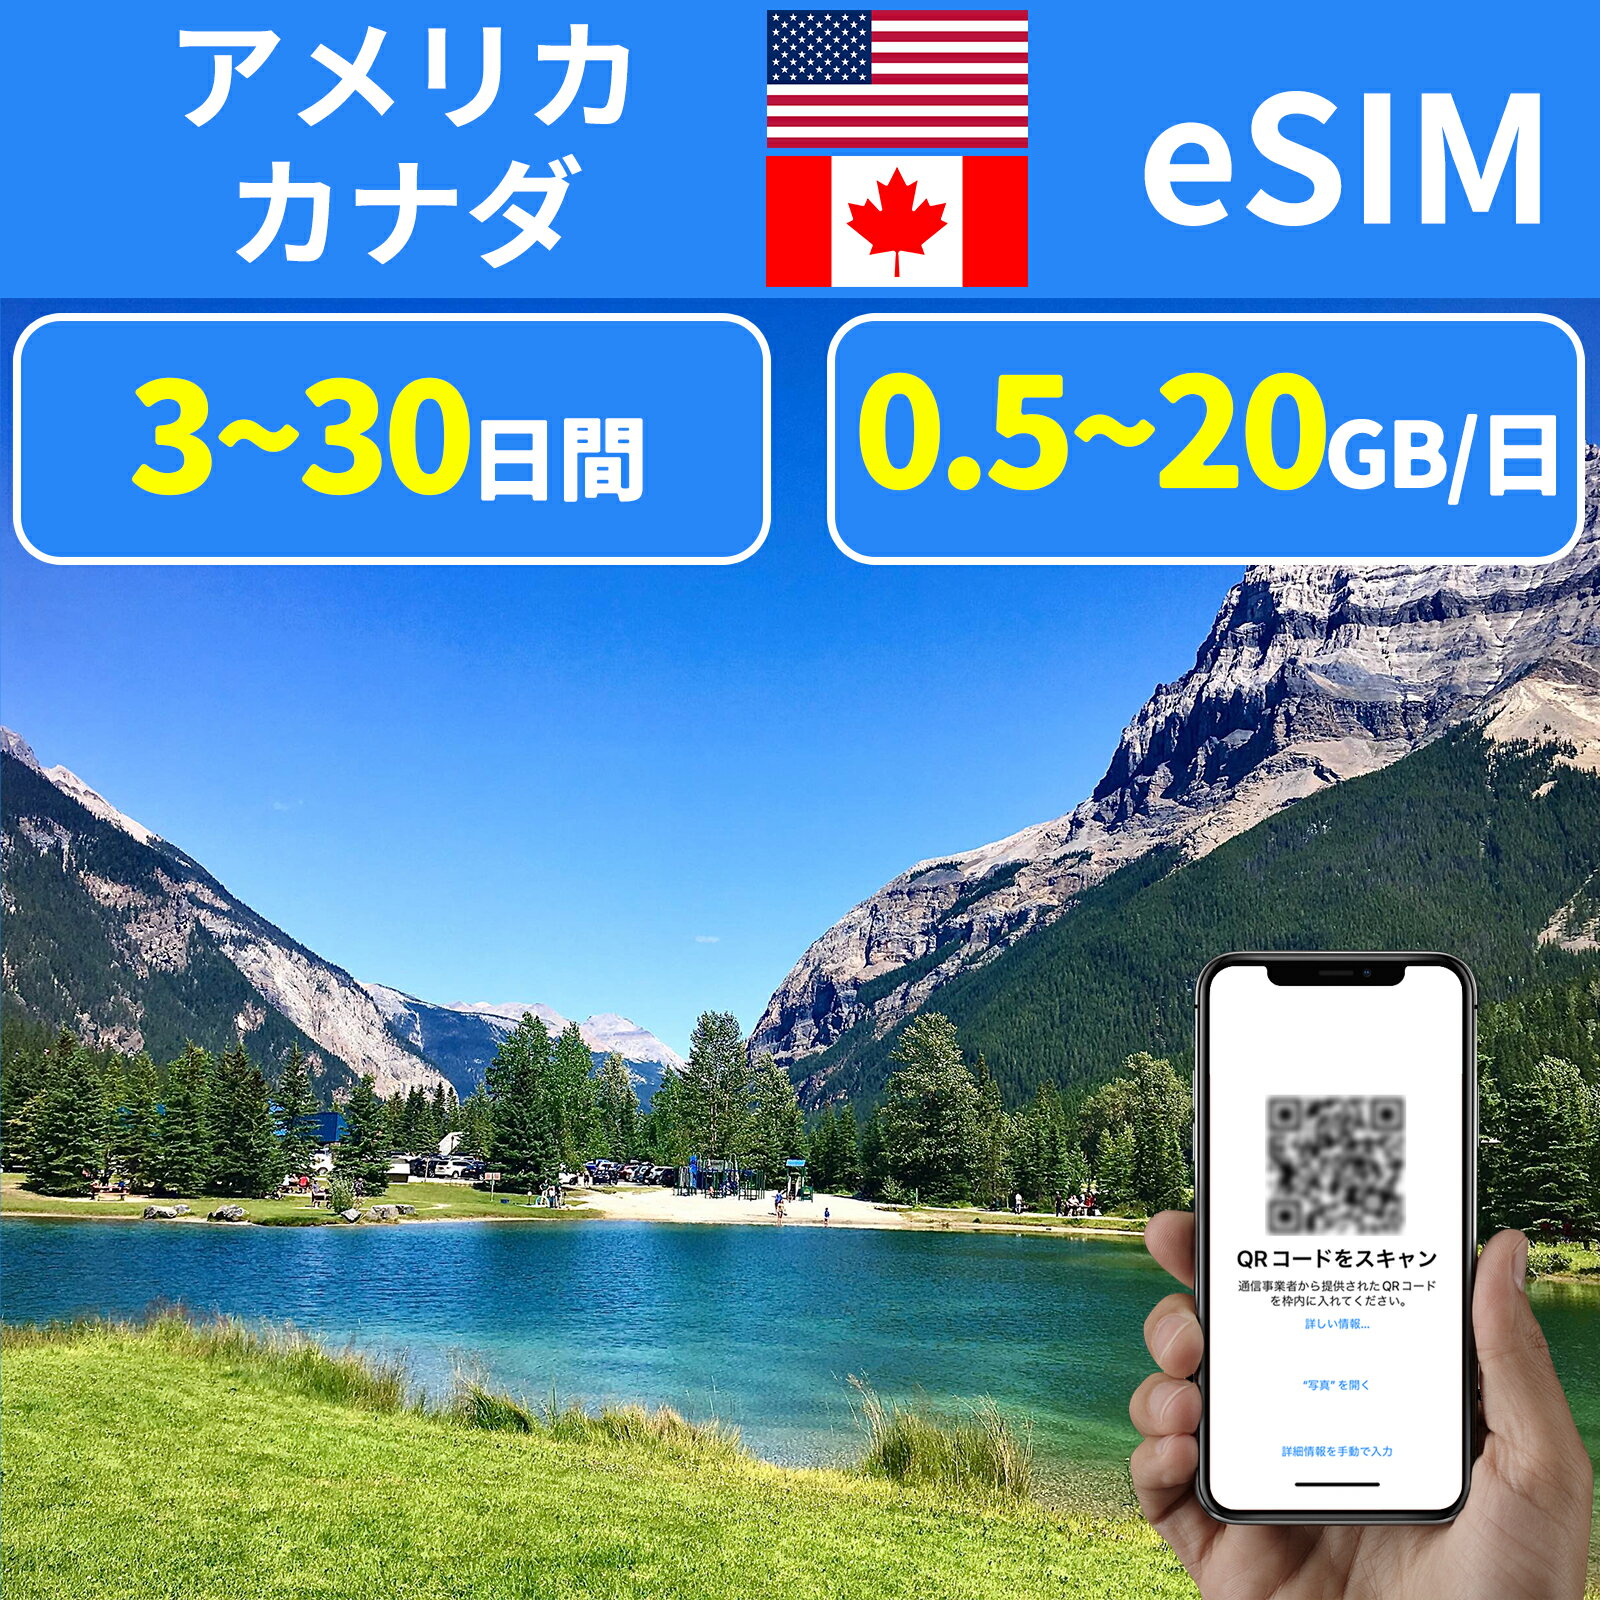 eSIM 米国eSIM ニューヨーク アメリカeSIM USA サンフランシスコ ロス カナダeSIM オタワ Canada 500MB 1GB 2GB 5GB 10GB 20GB 3日間 5..